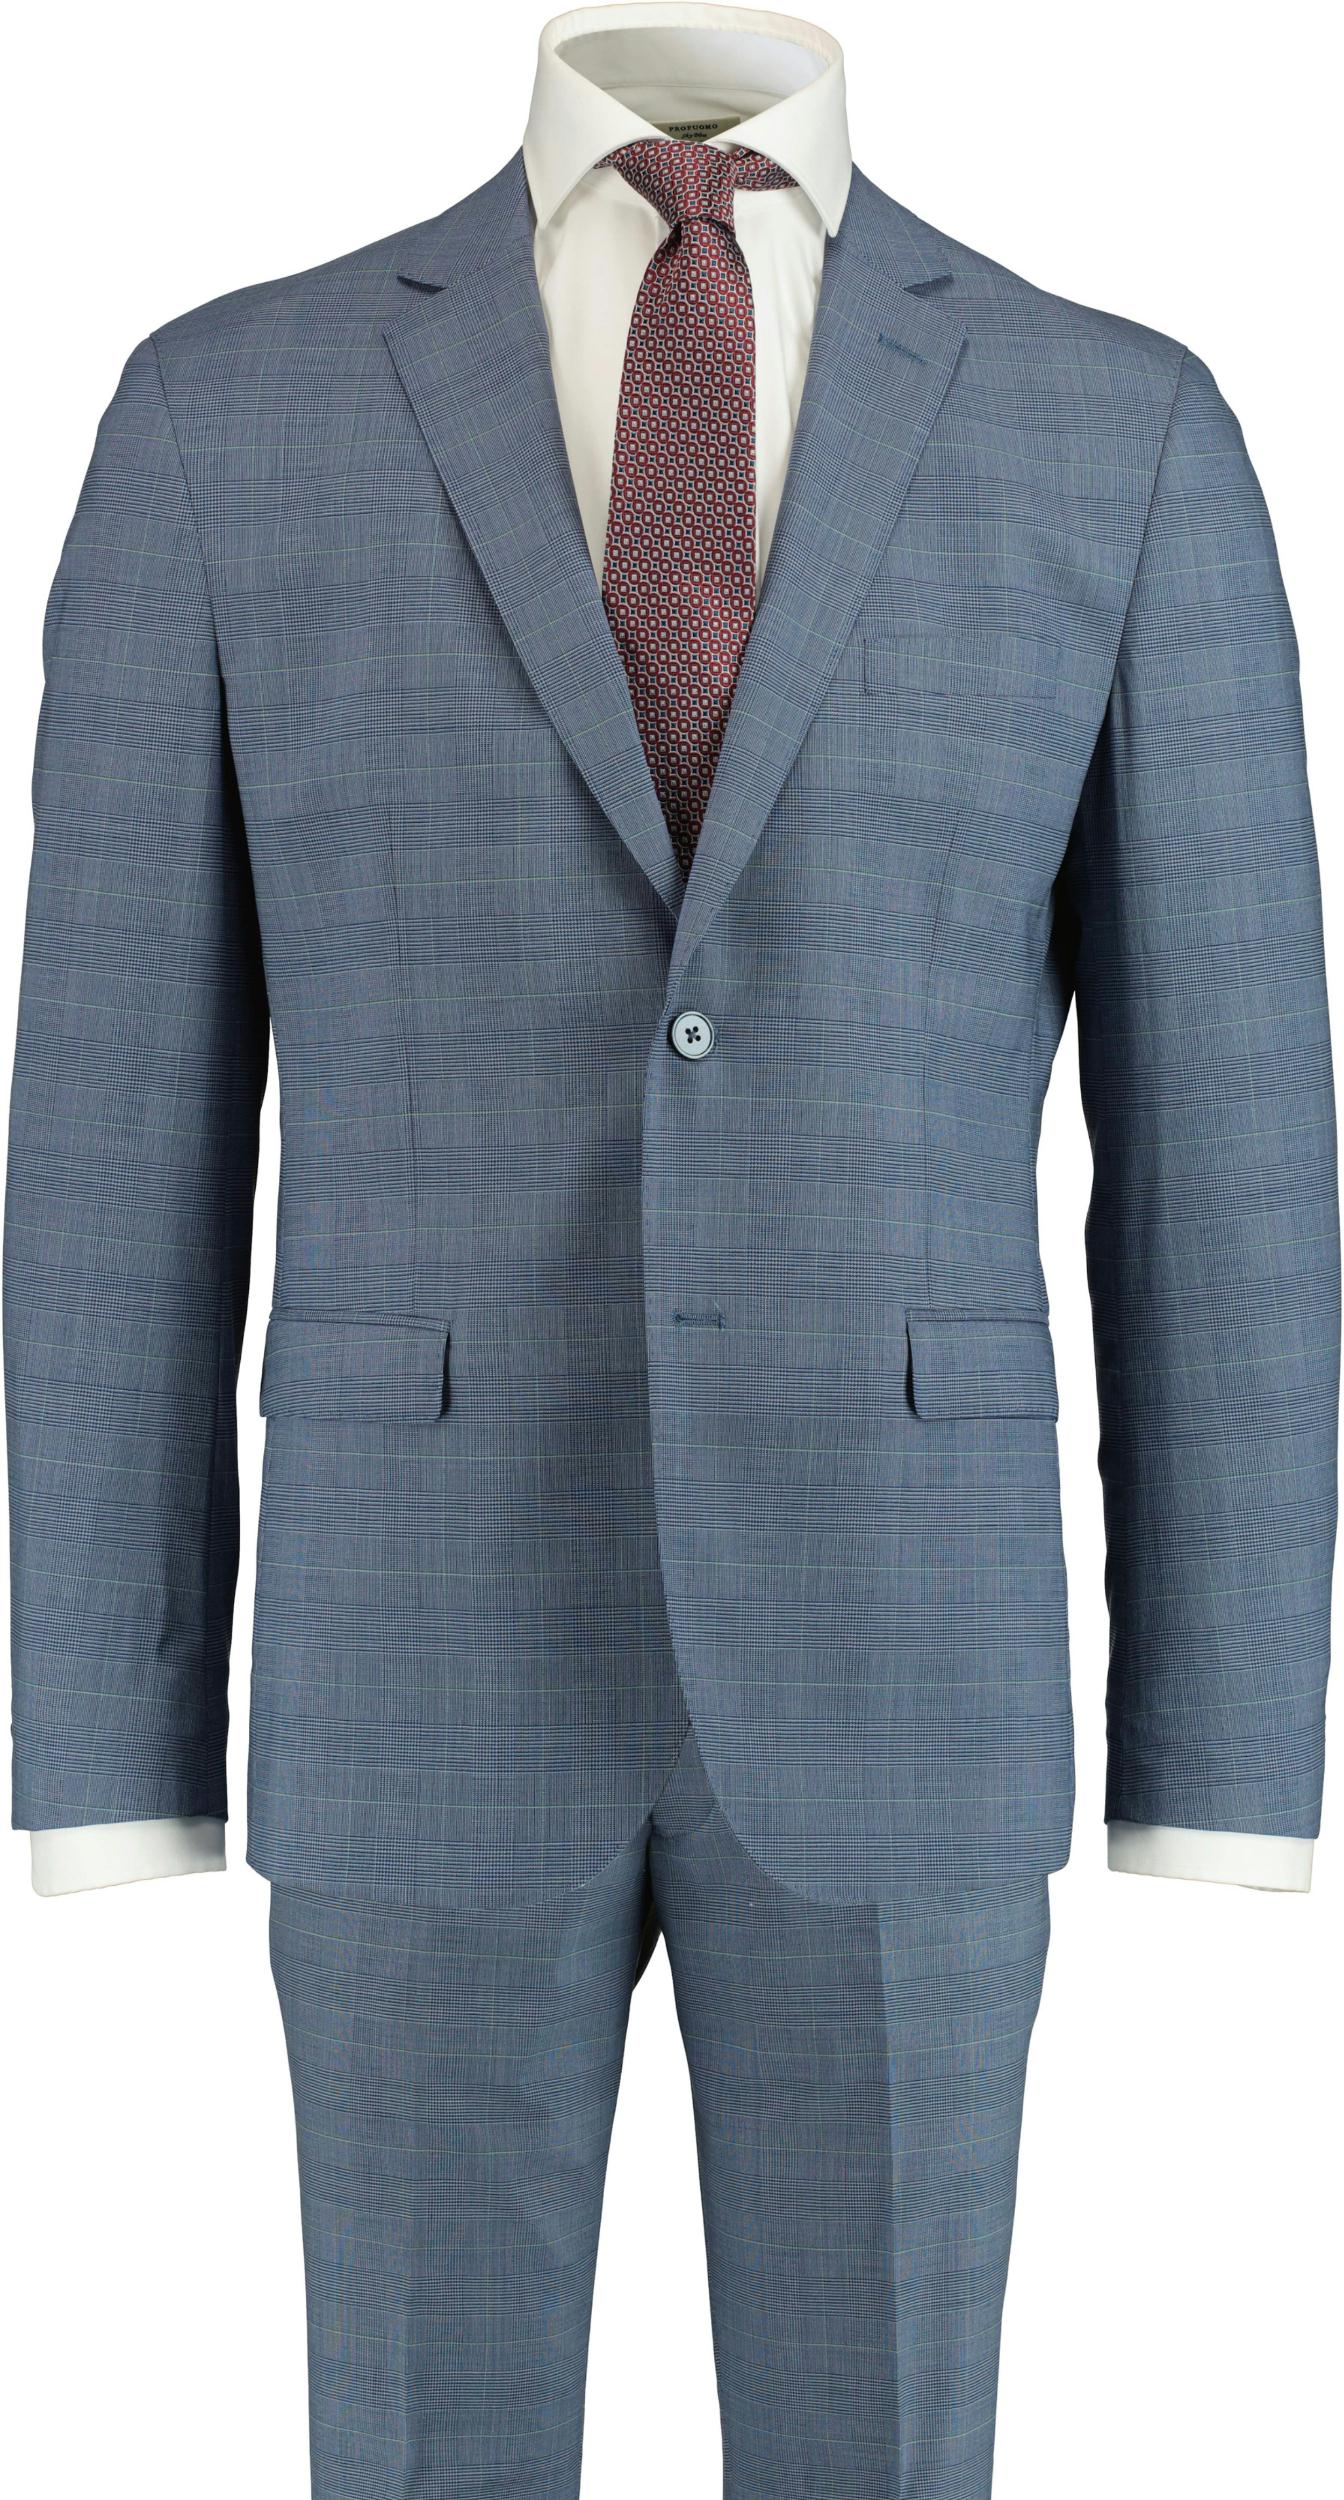 Scotland Blue Kostuum Blauw D7,5 Lyon Suit 211027LY07SB/240 blue